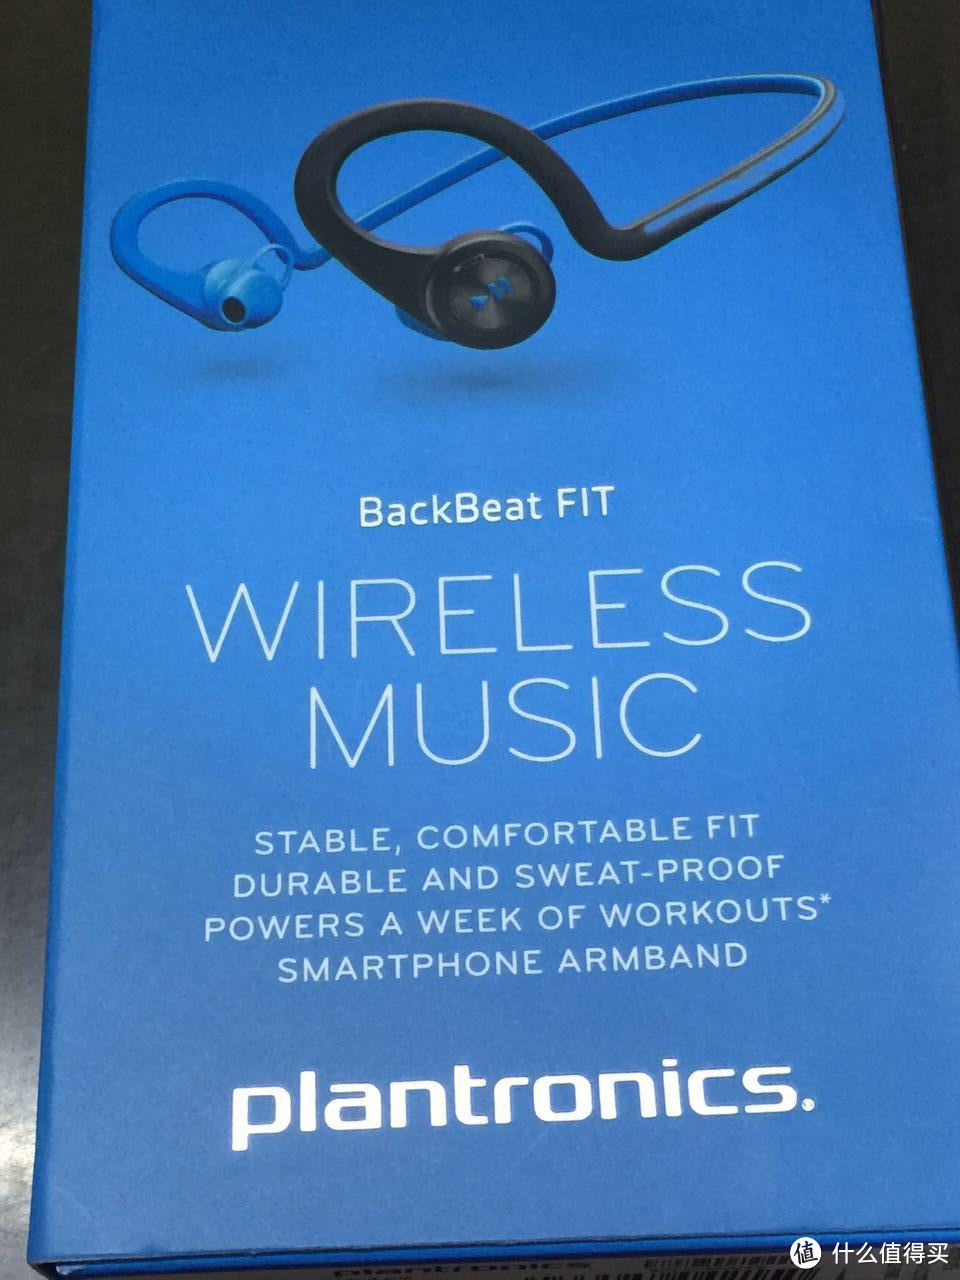 为运动寻找理由 — Plantronics  缤特力 backbeat fit运动蓝牙耳机开箱实录及初感受